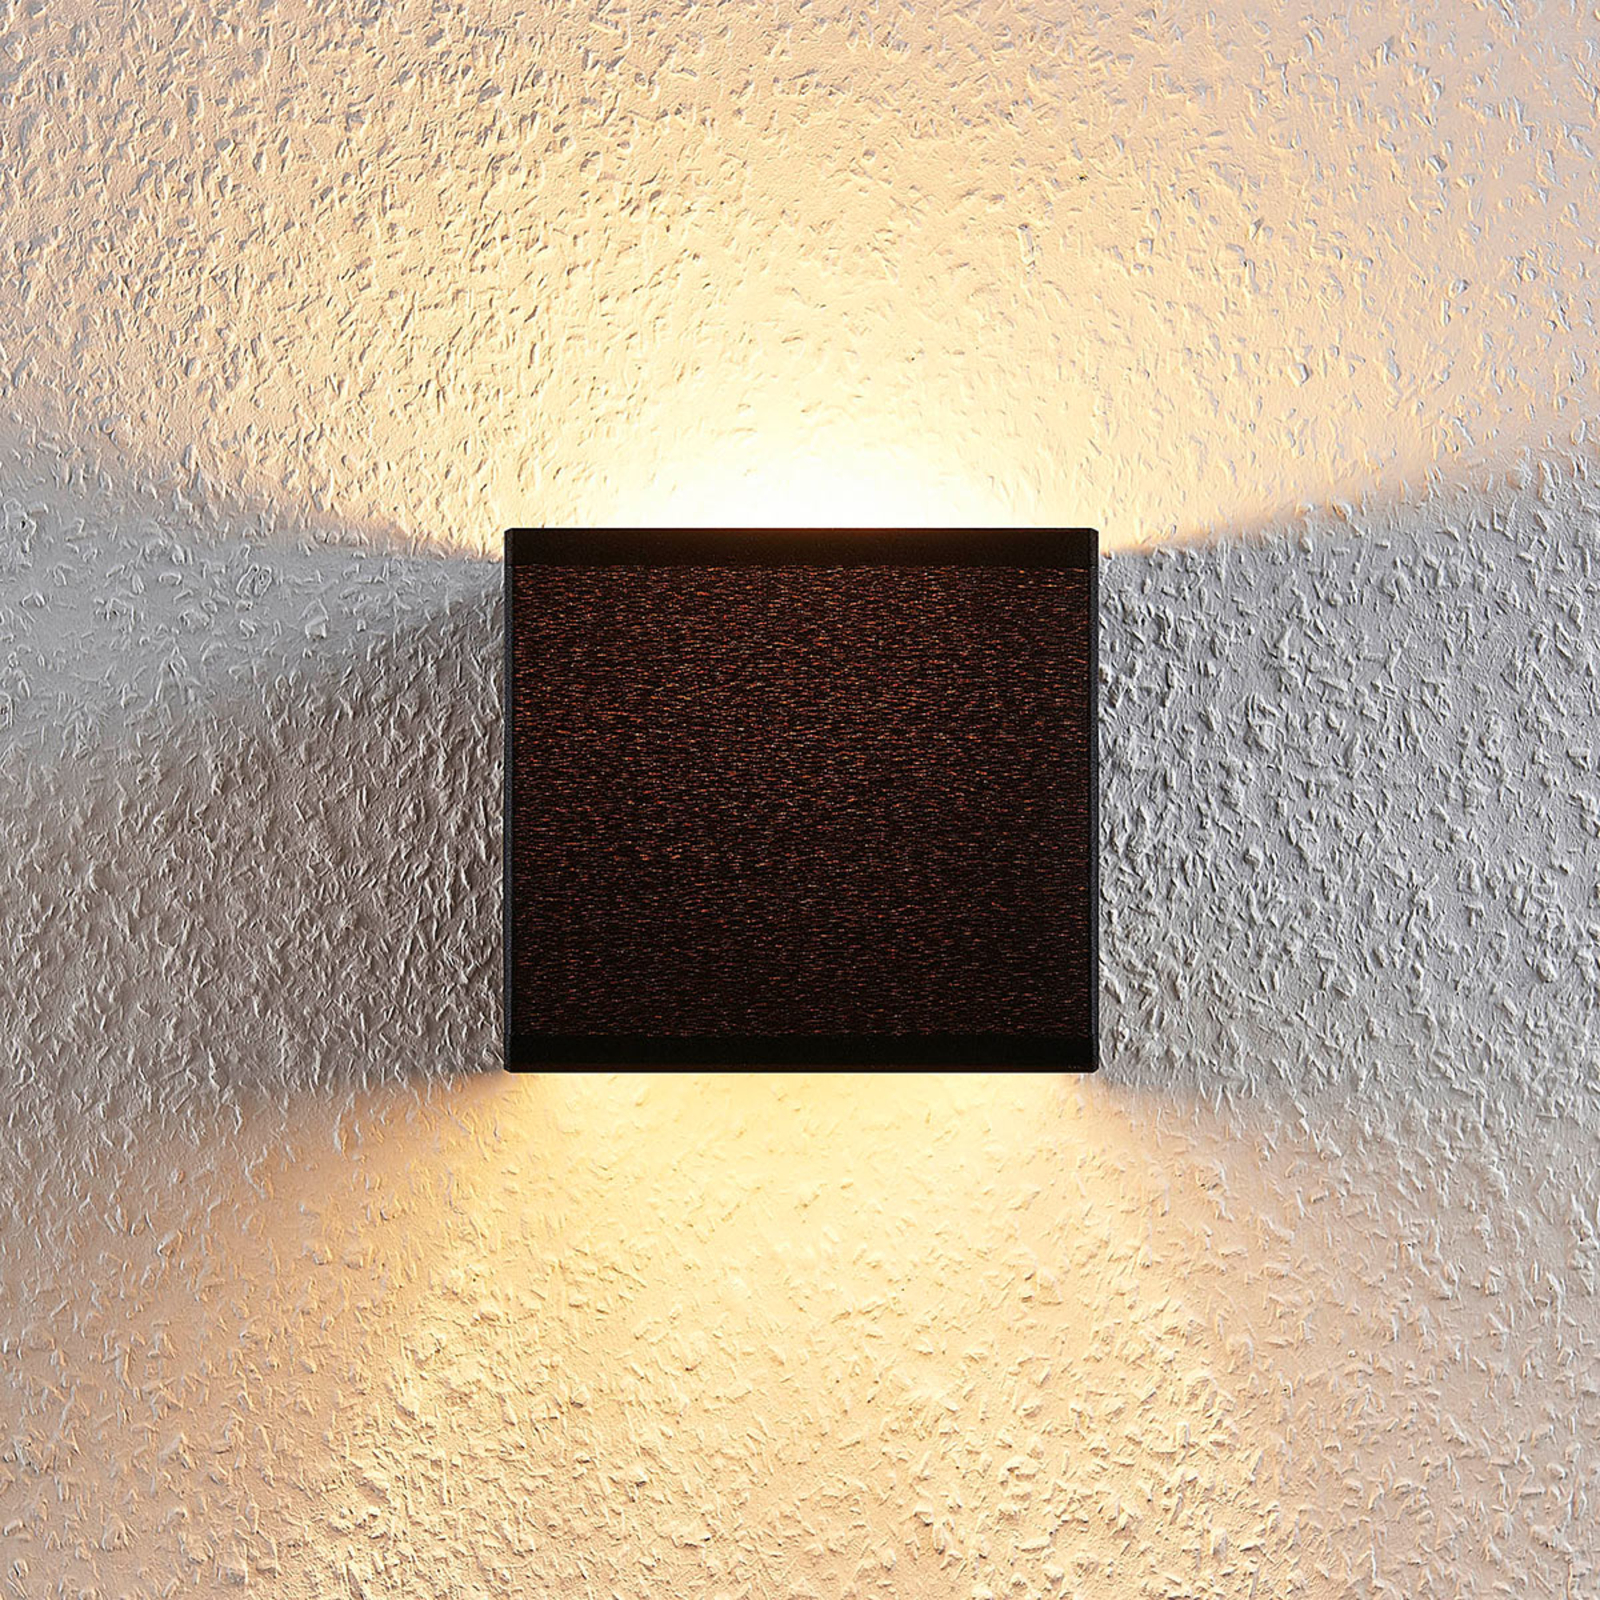 Stoff-Wandlampe Adea mit Schalter, 13 cm, schwarz